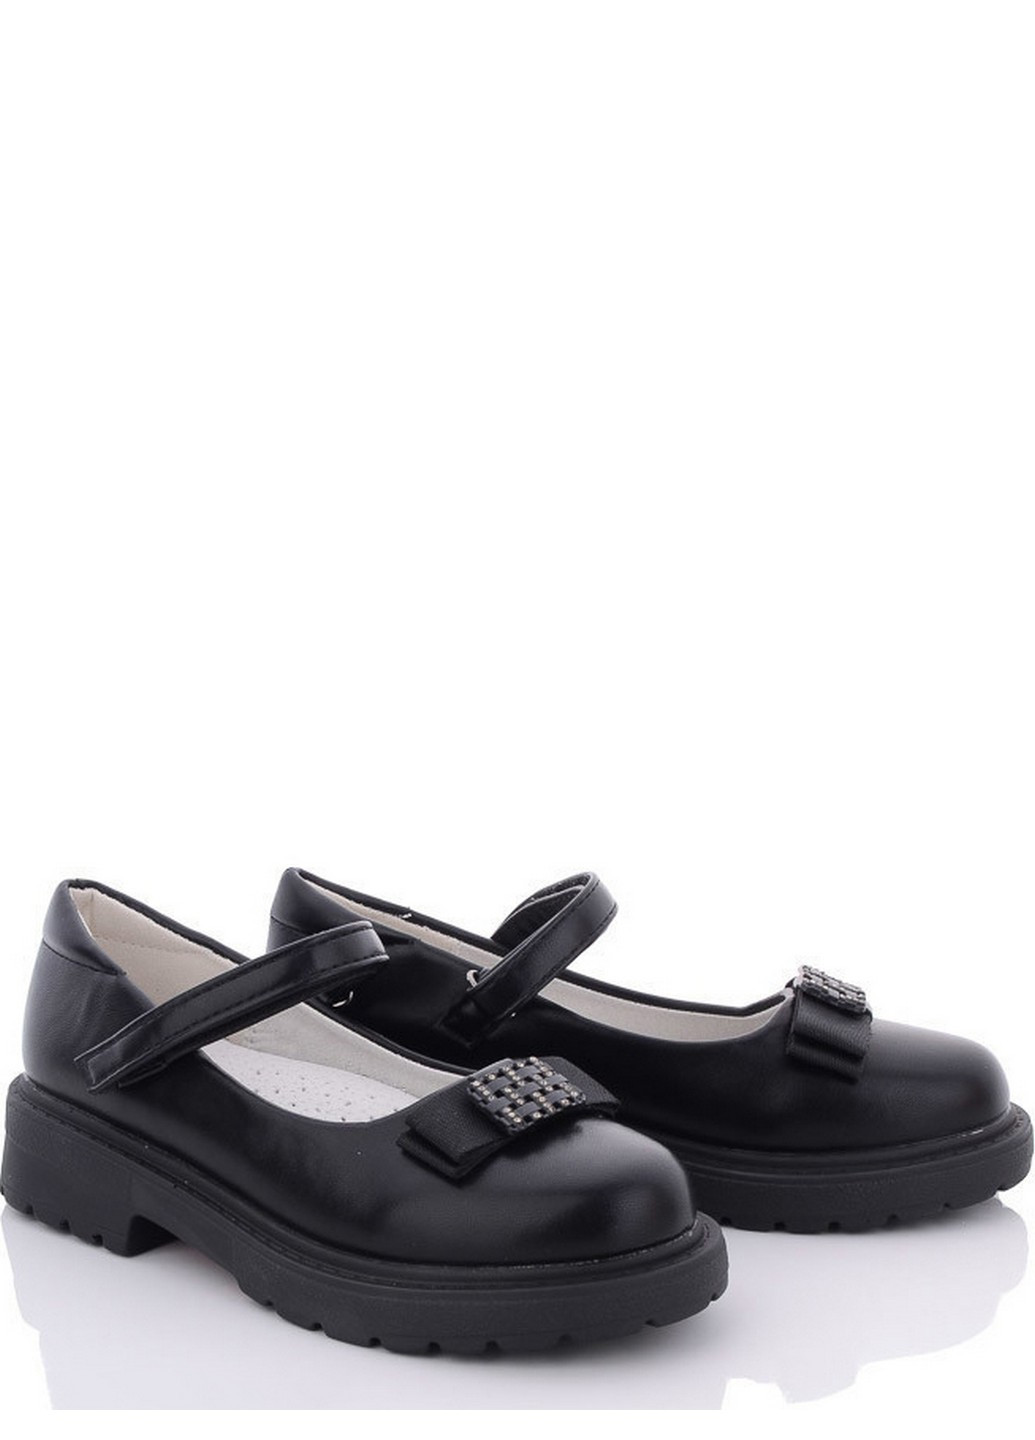 Черные туфли p8837-160 Paliament